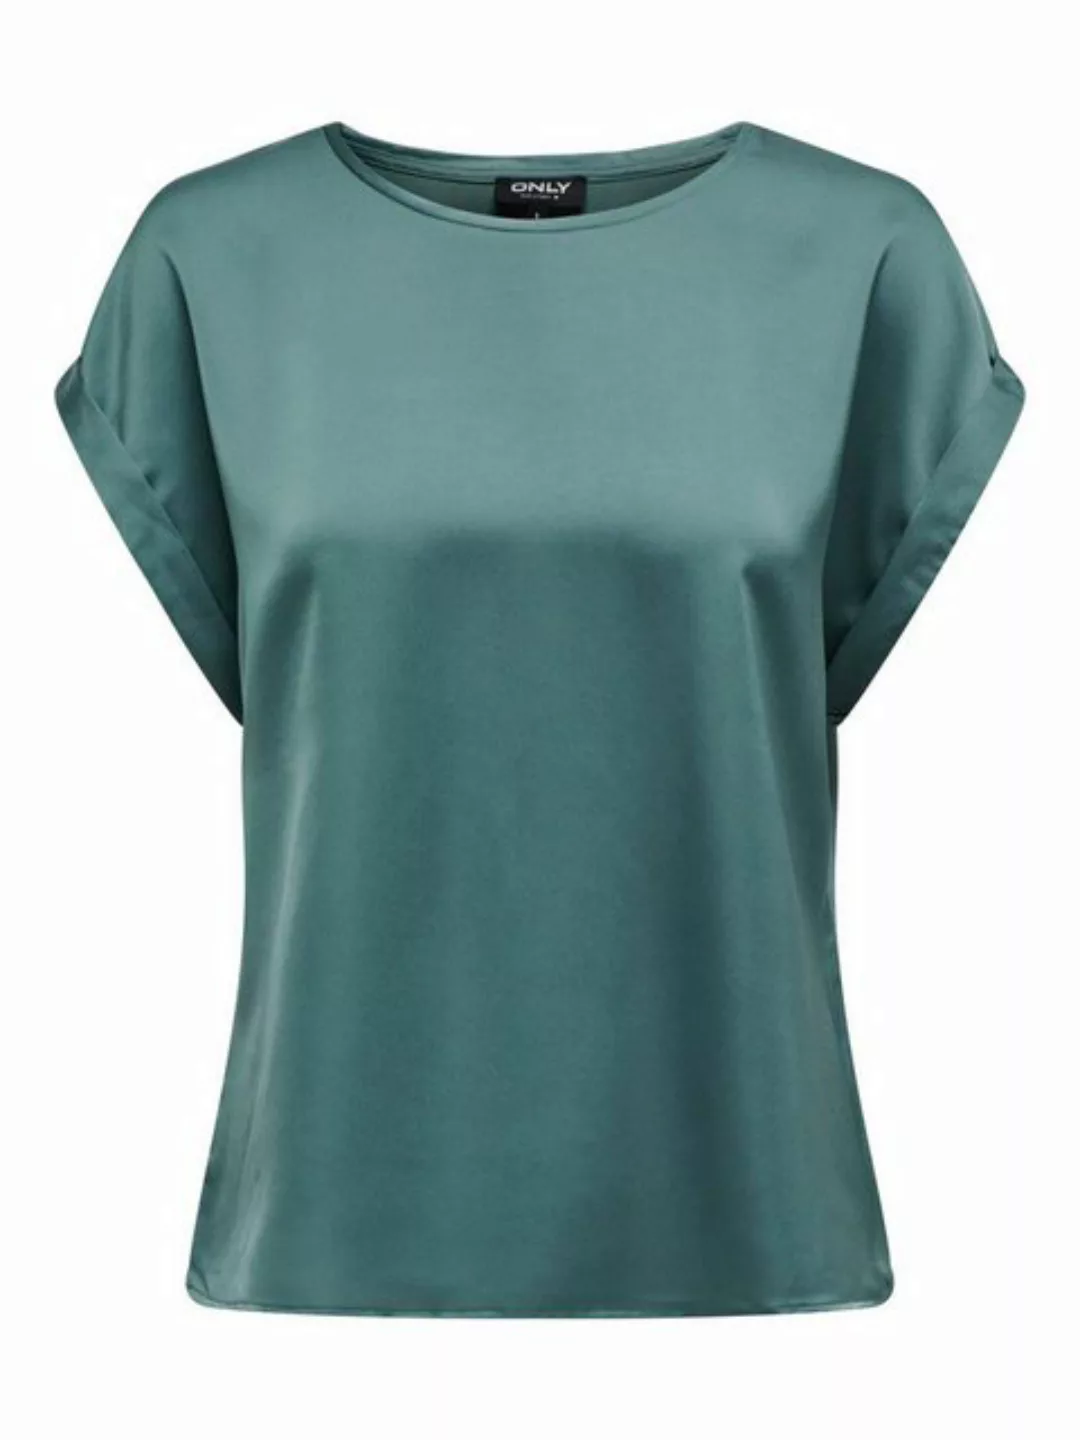 ONLY T-Shirt Glänzendes Silky Shirts Oberteil mit Seiden Optik 7589 in Türk günstig online kaufen